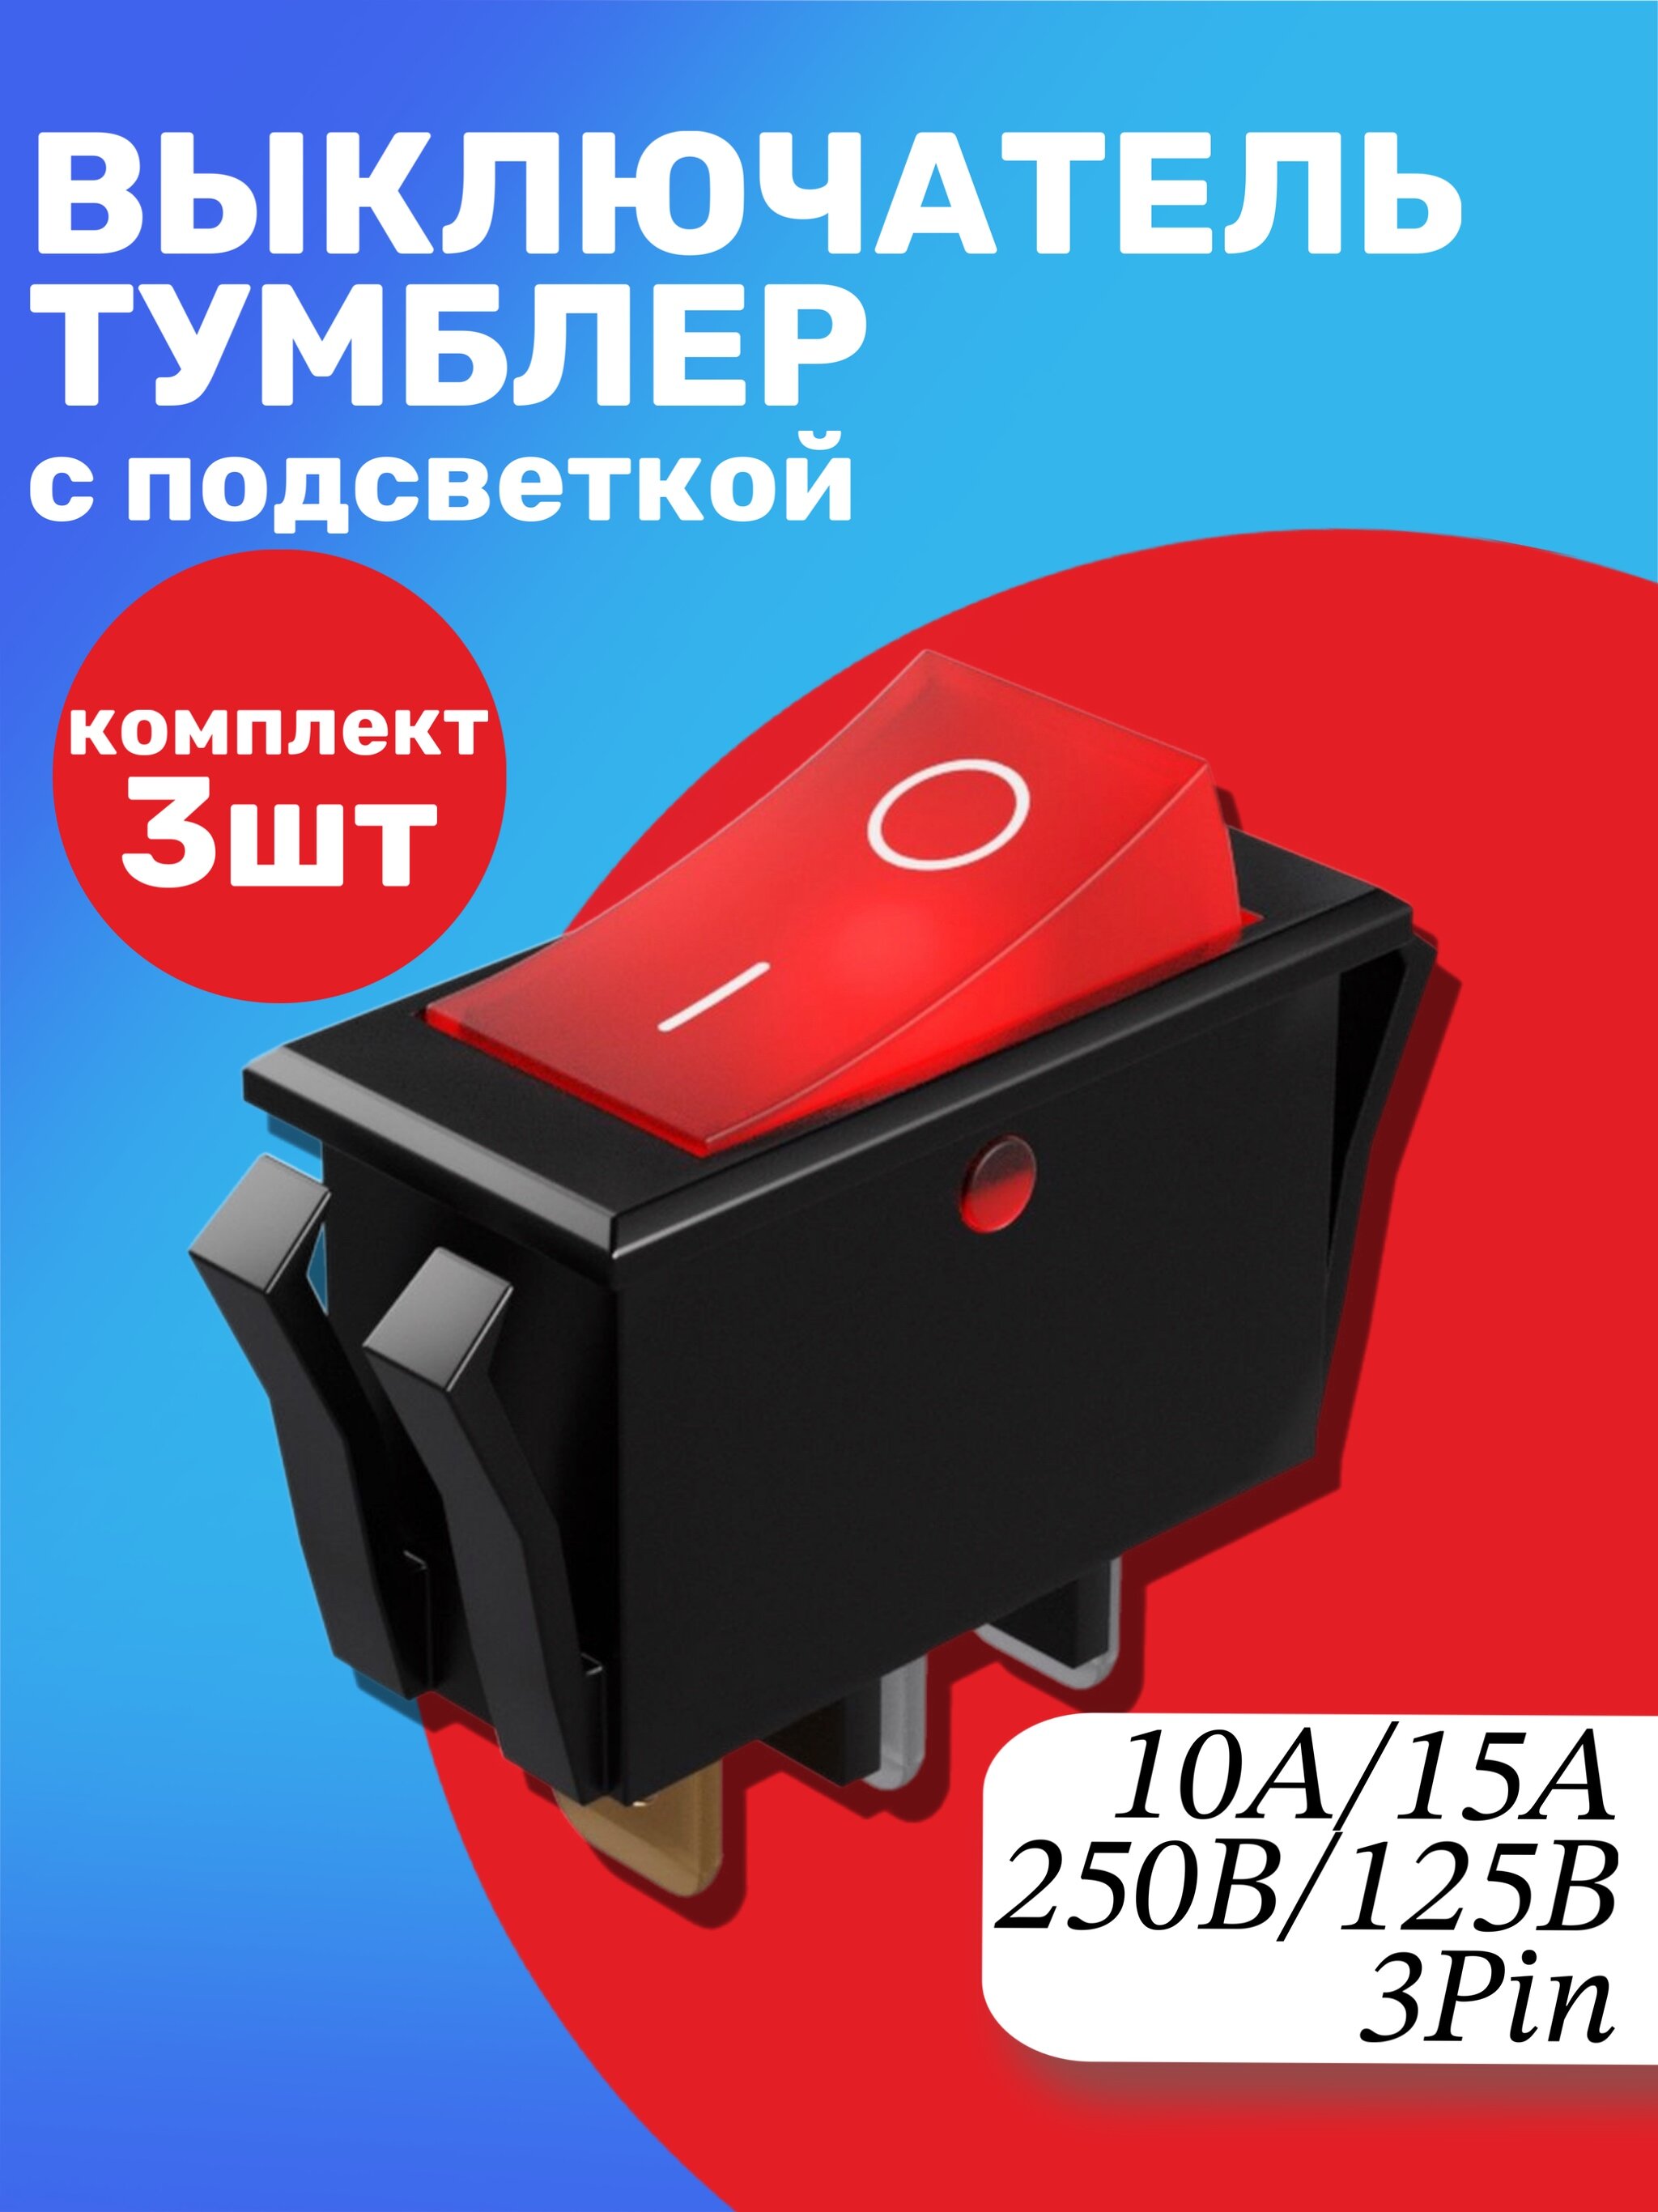 Кнопка выключатель (тумблер) GSMIN K3 ON-OFF 6А 250В AC 2-Pin (15x10x15мм) комплект 3шт (Красный) - фотография № 1